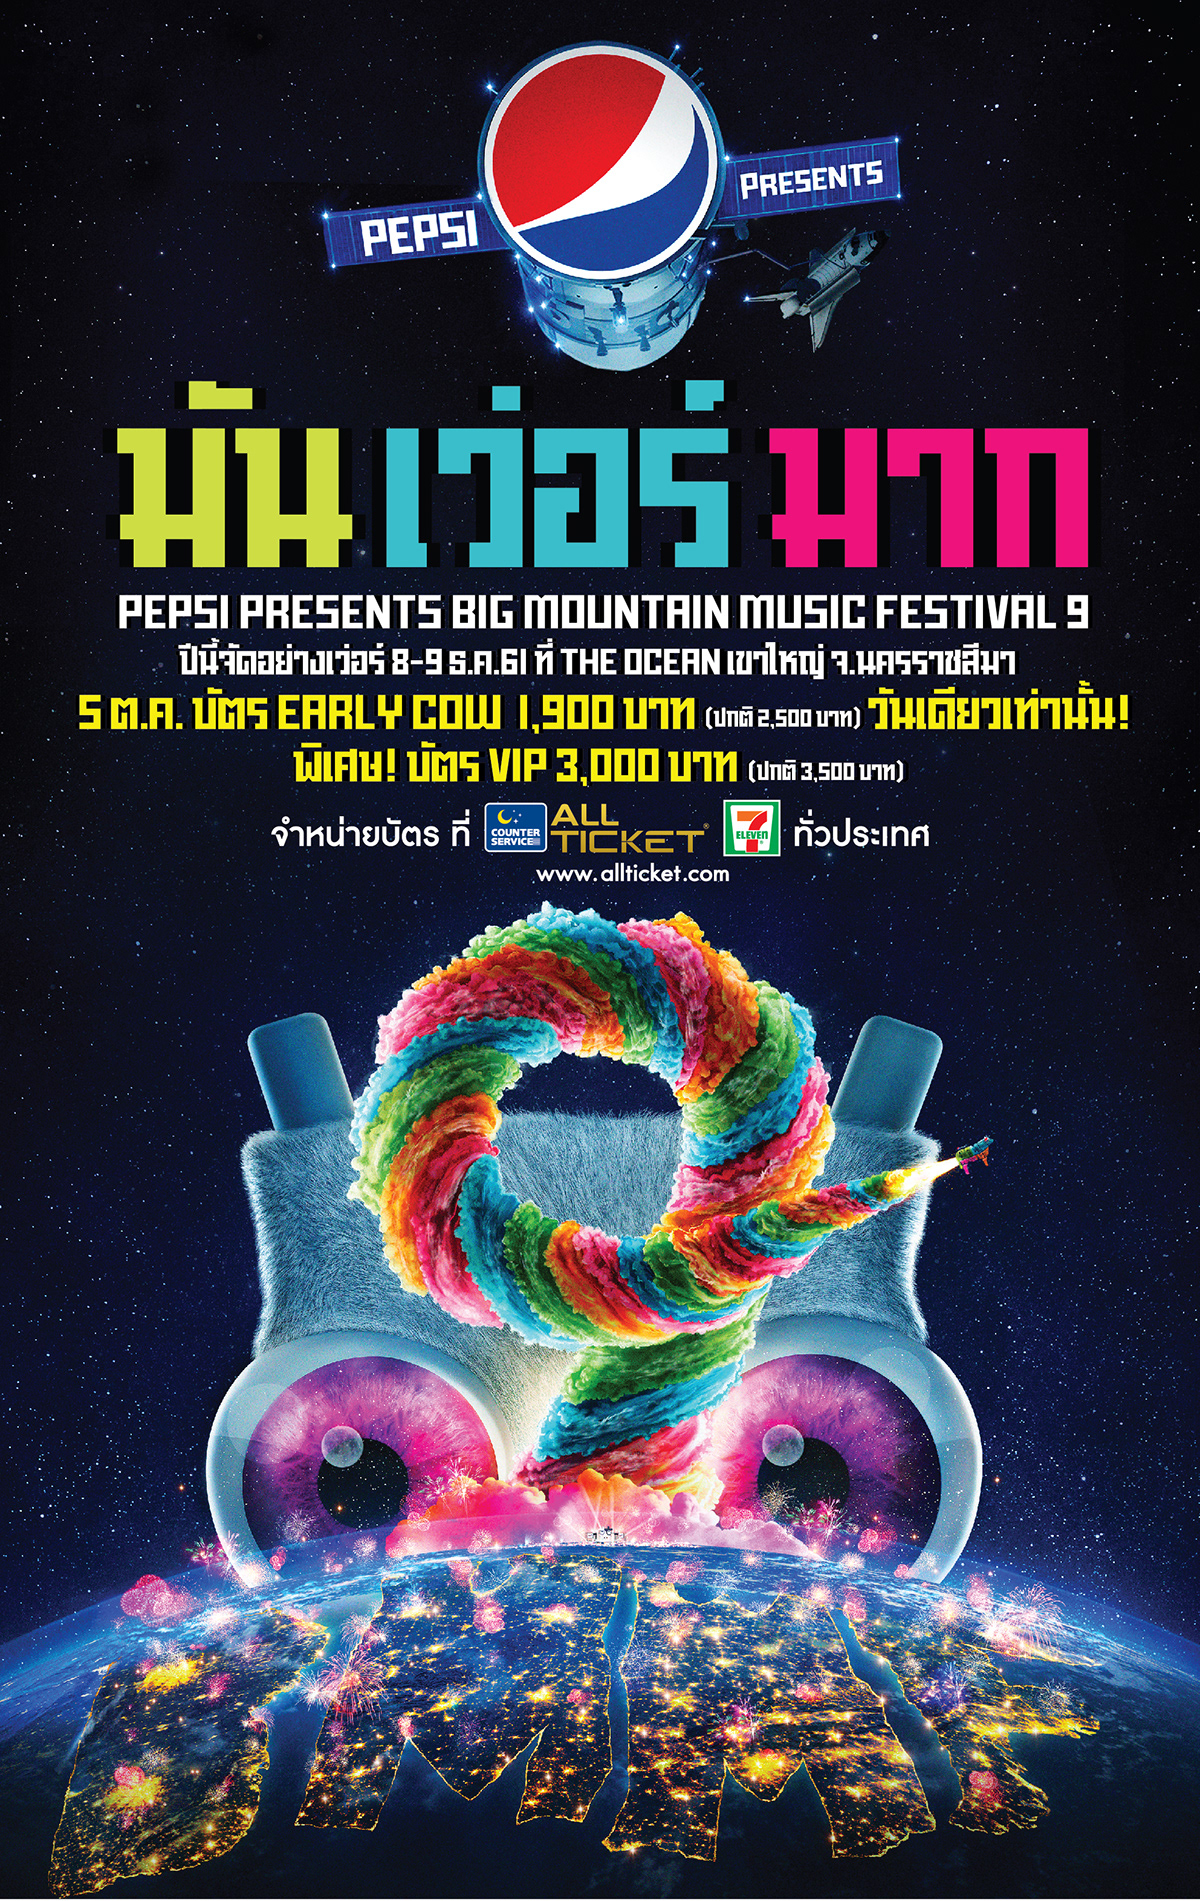 BMMF concert concert poster festival key art key visual music